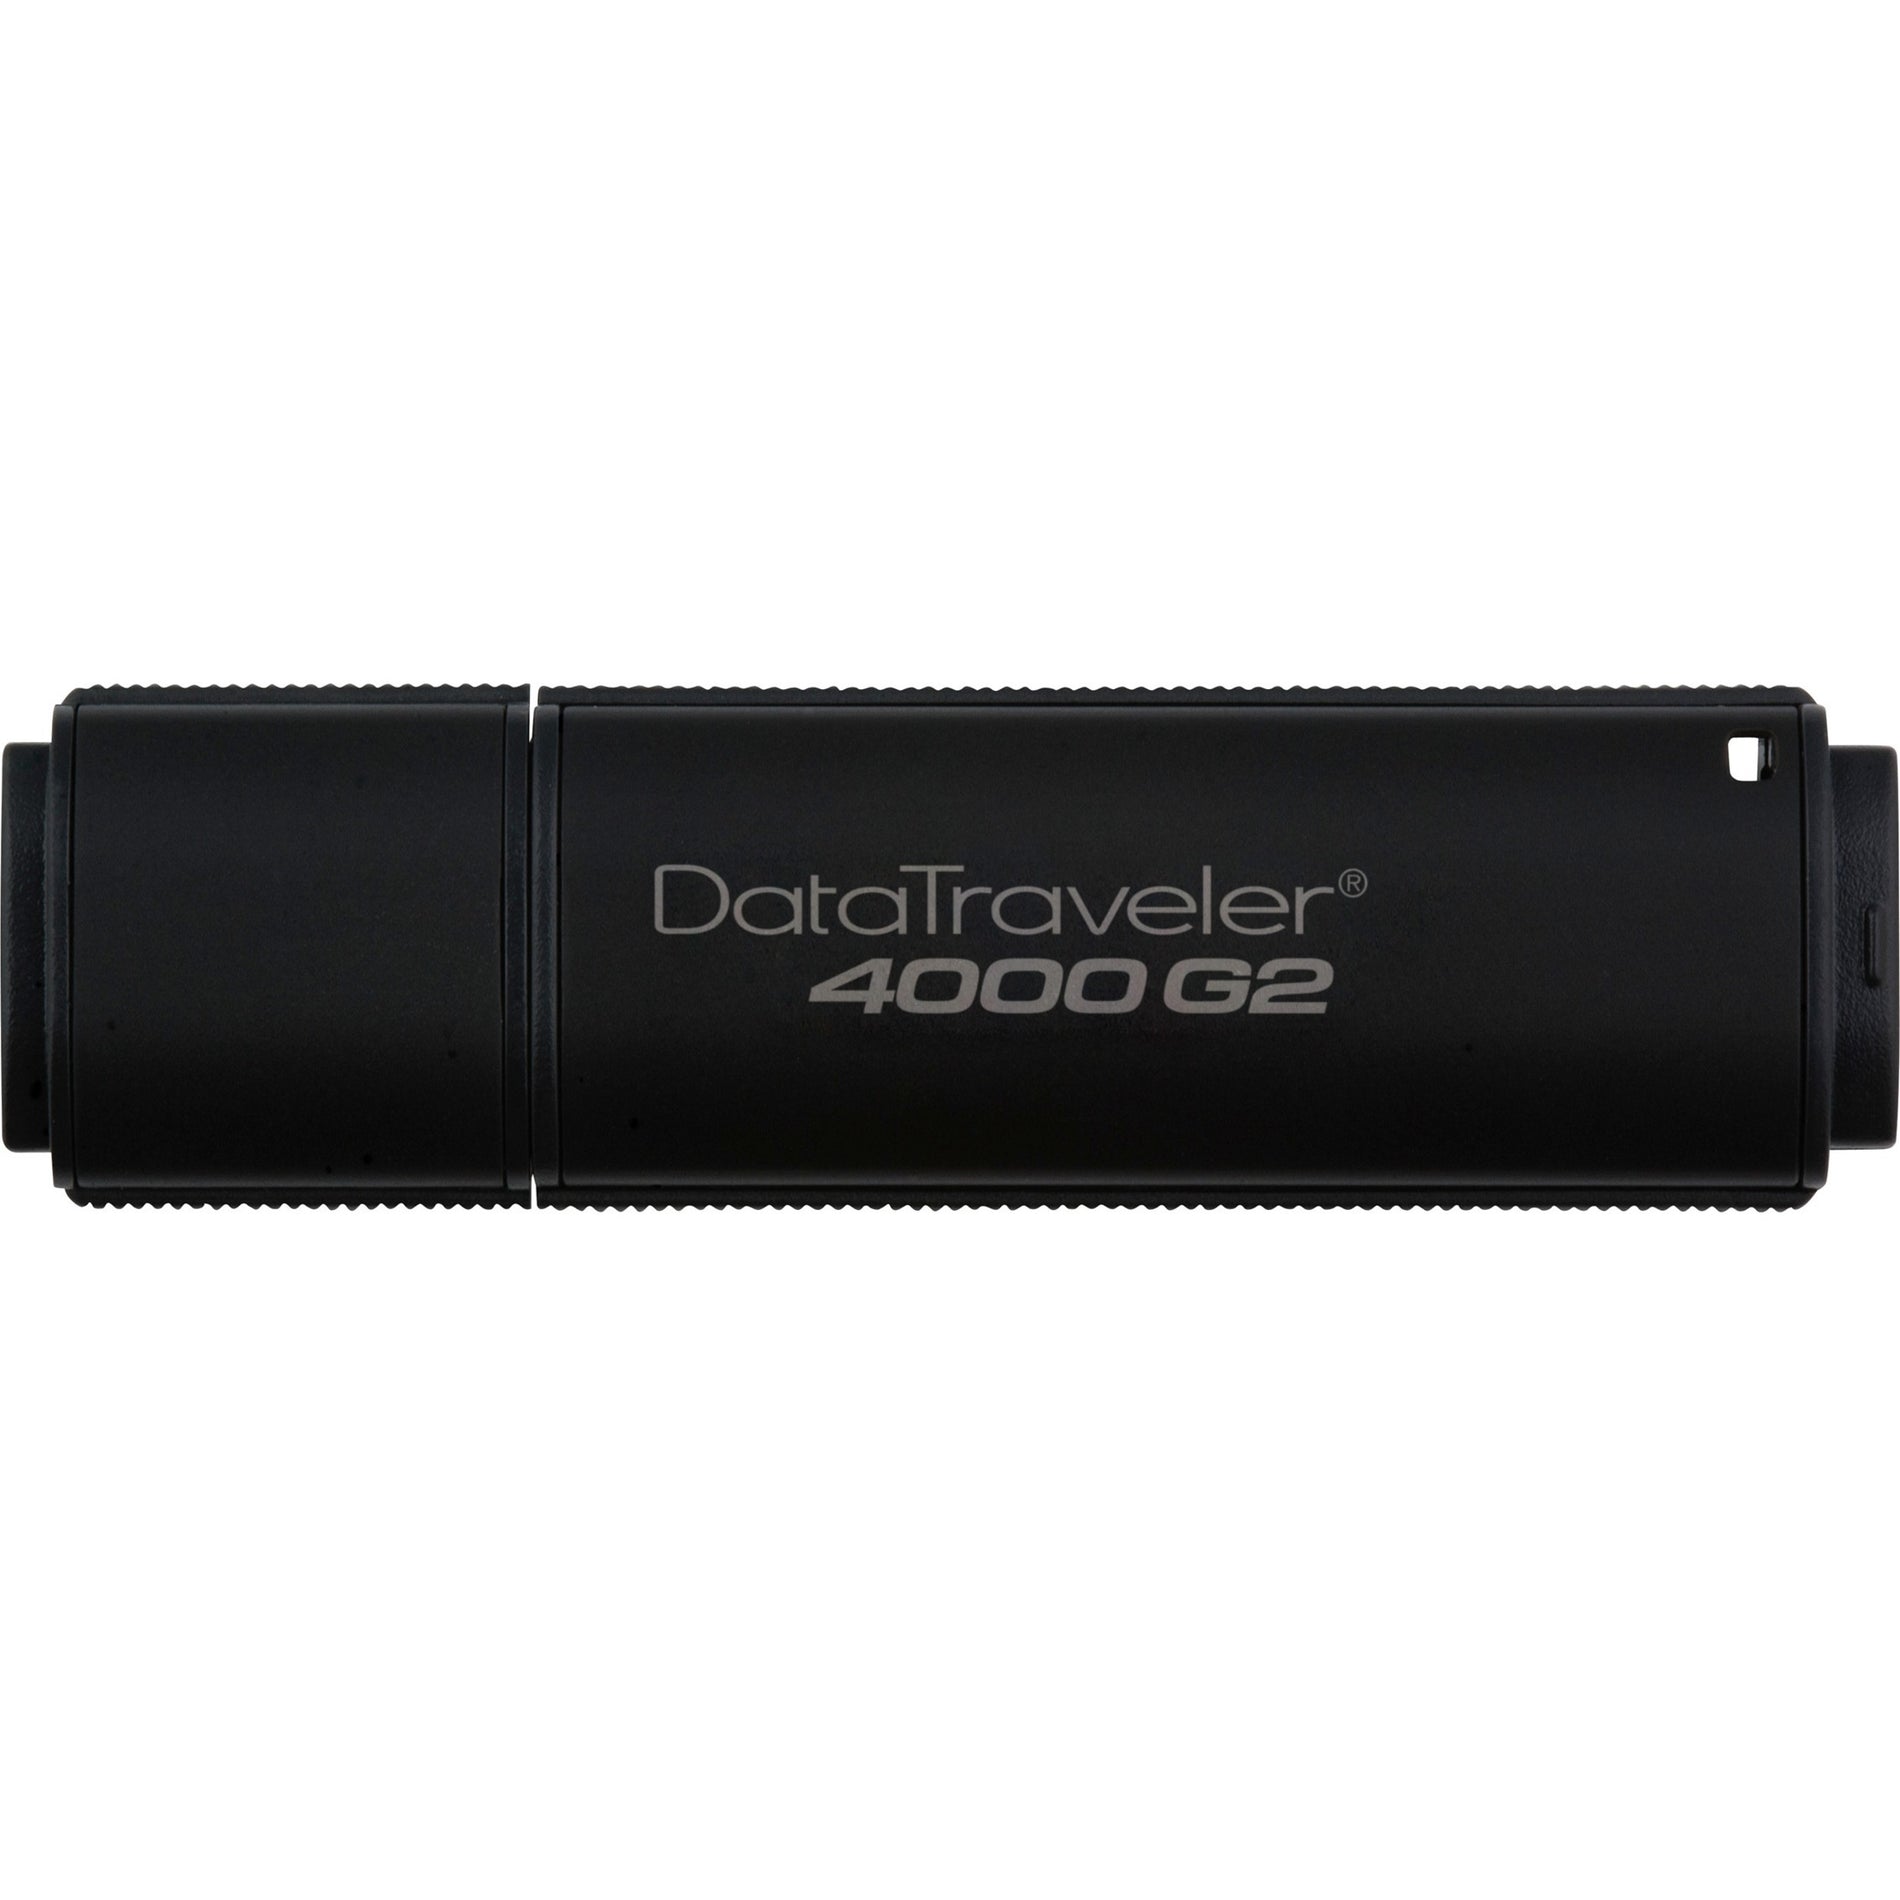 Kingston DT4000G2DM/16GB DataTraveler 4000 G2 16GB USB 3.0 Flash Drive, 256 AES FIPS 140-2 Level 3